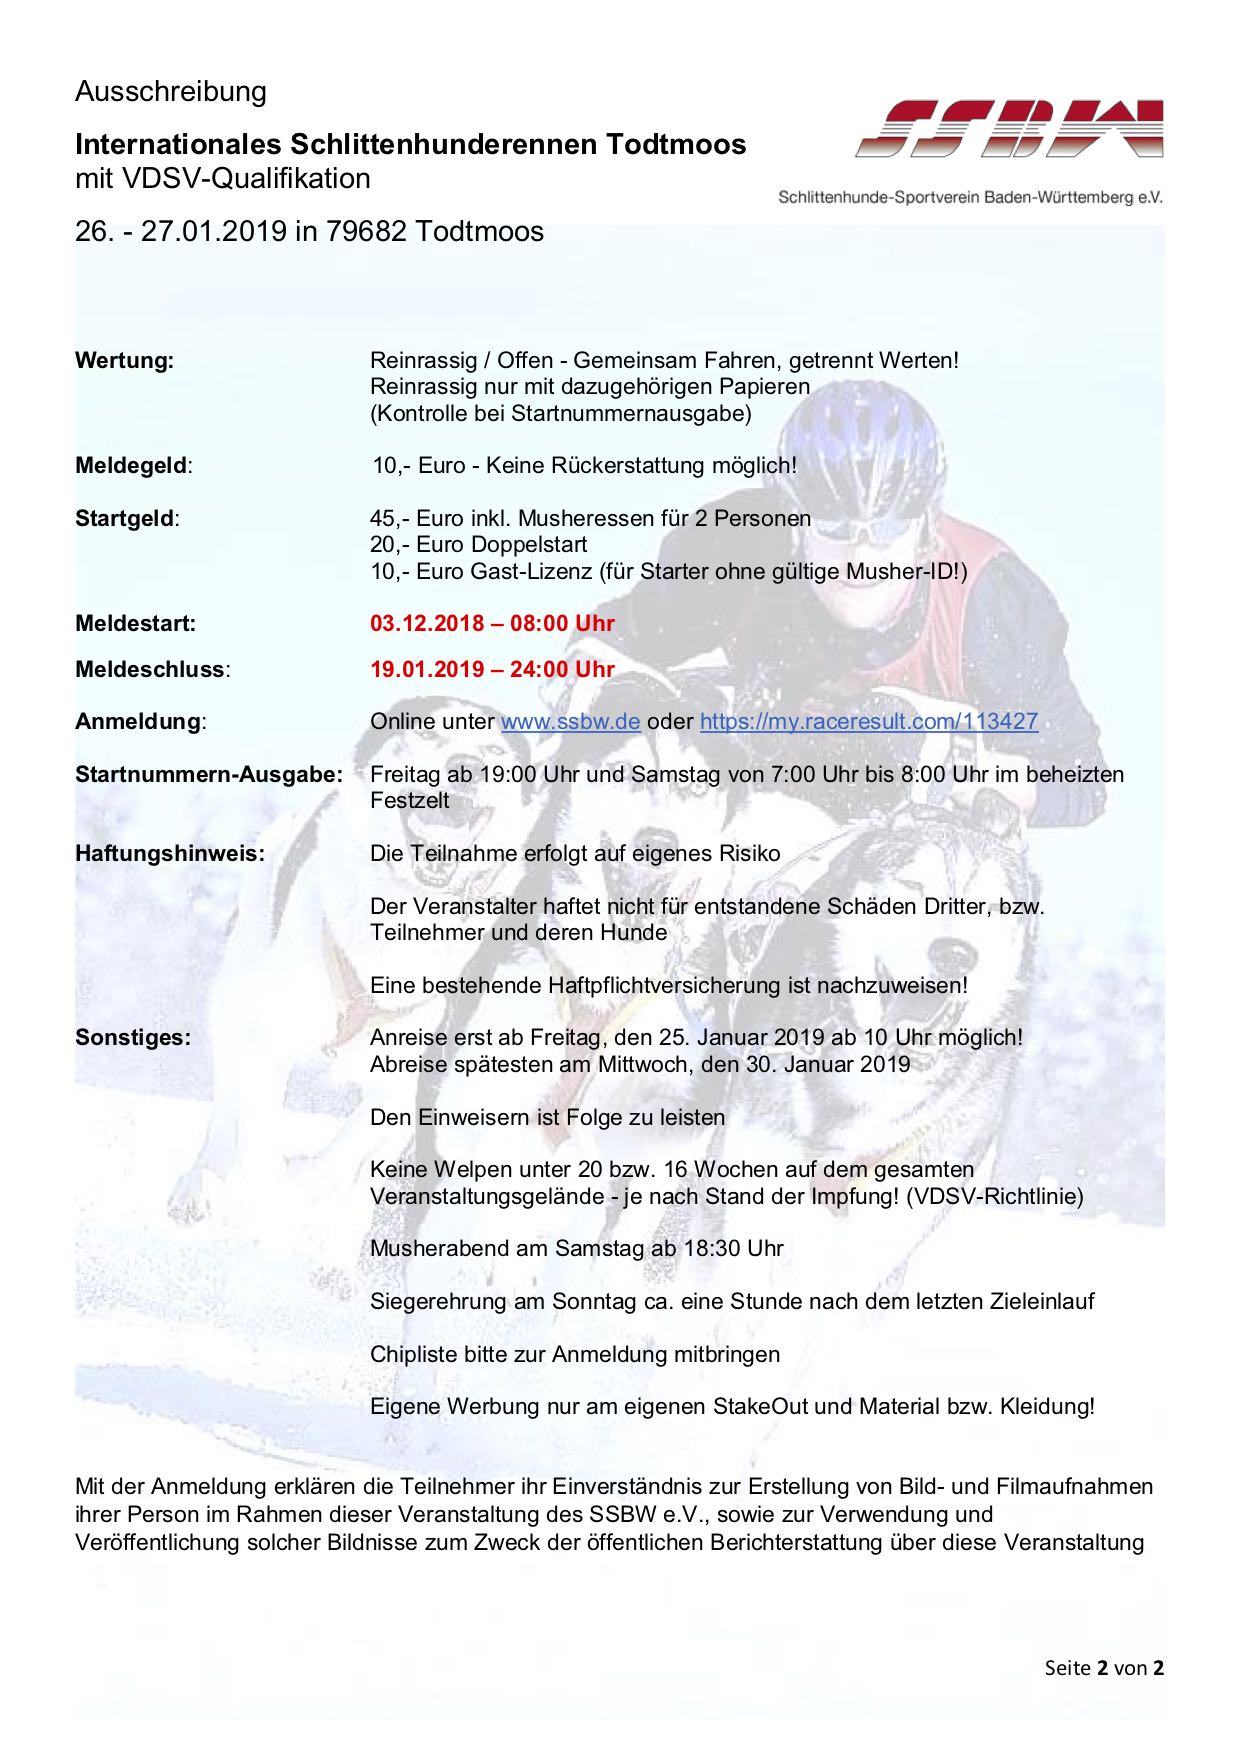 Ausschreibung Todtmoos snow mit Qualifikation 2019 final2